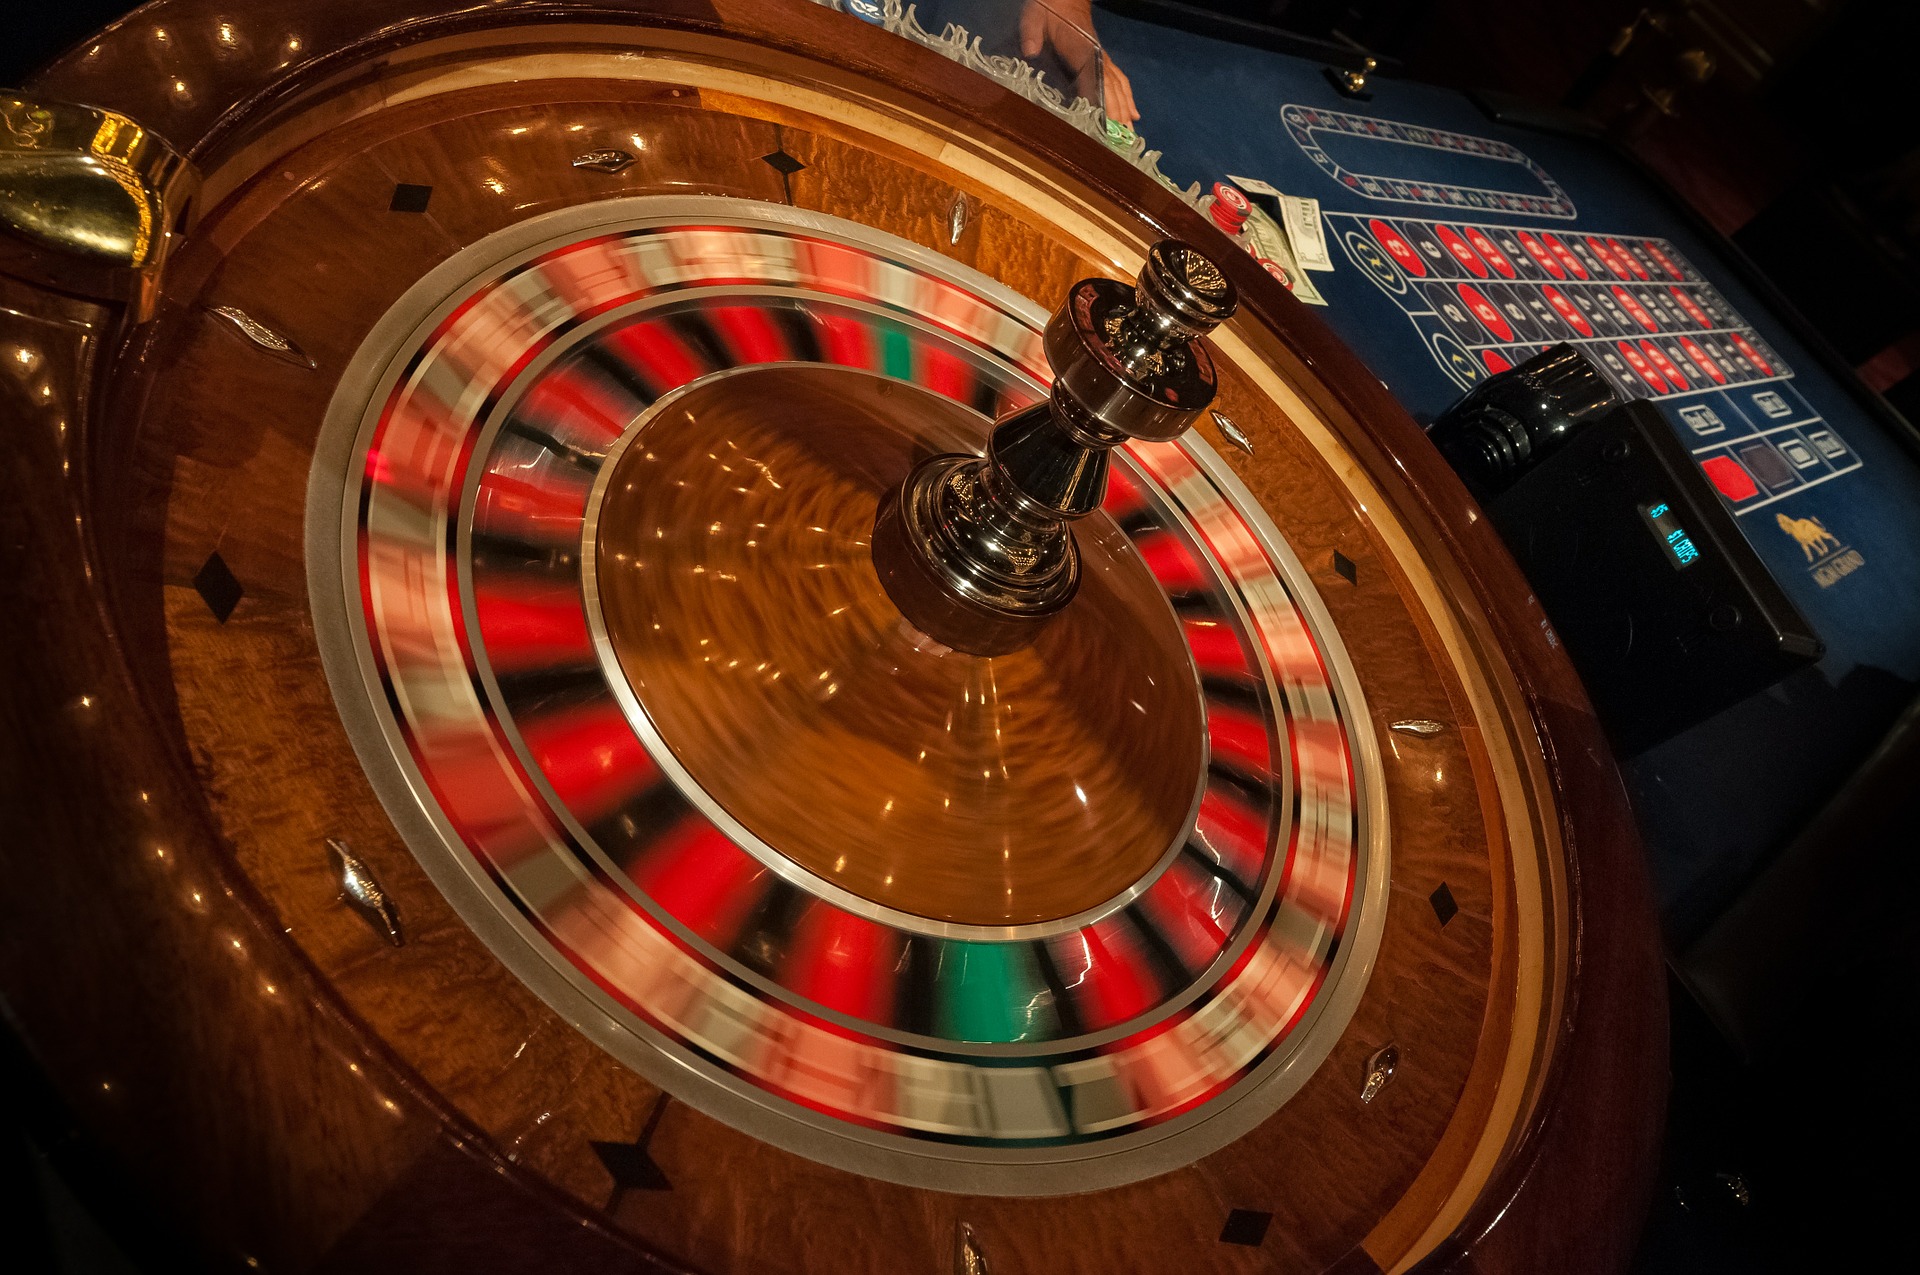 jogo do kasino